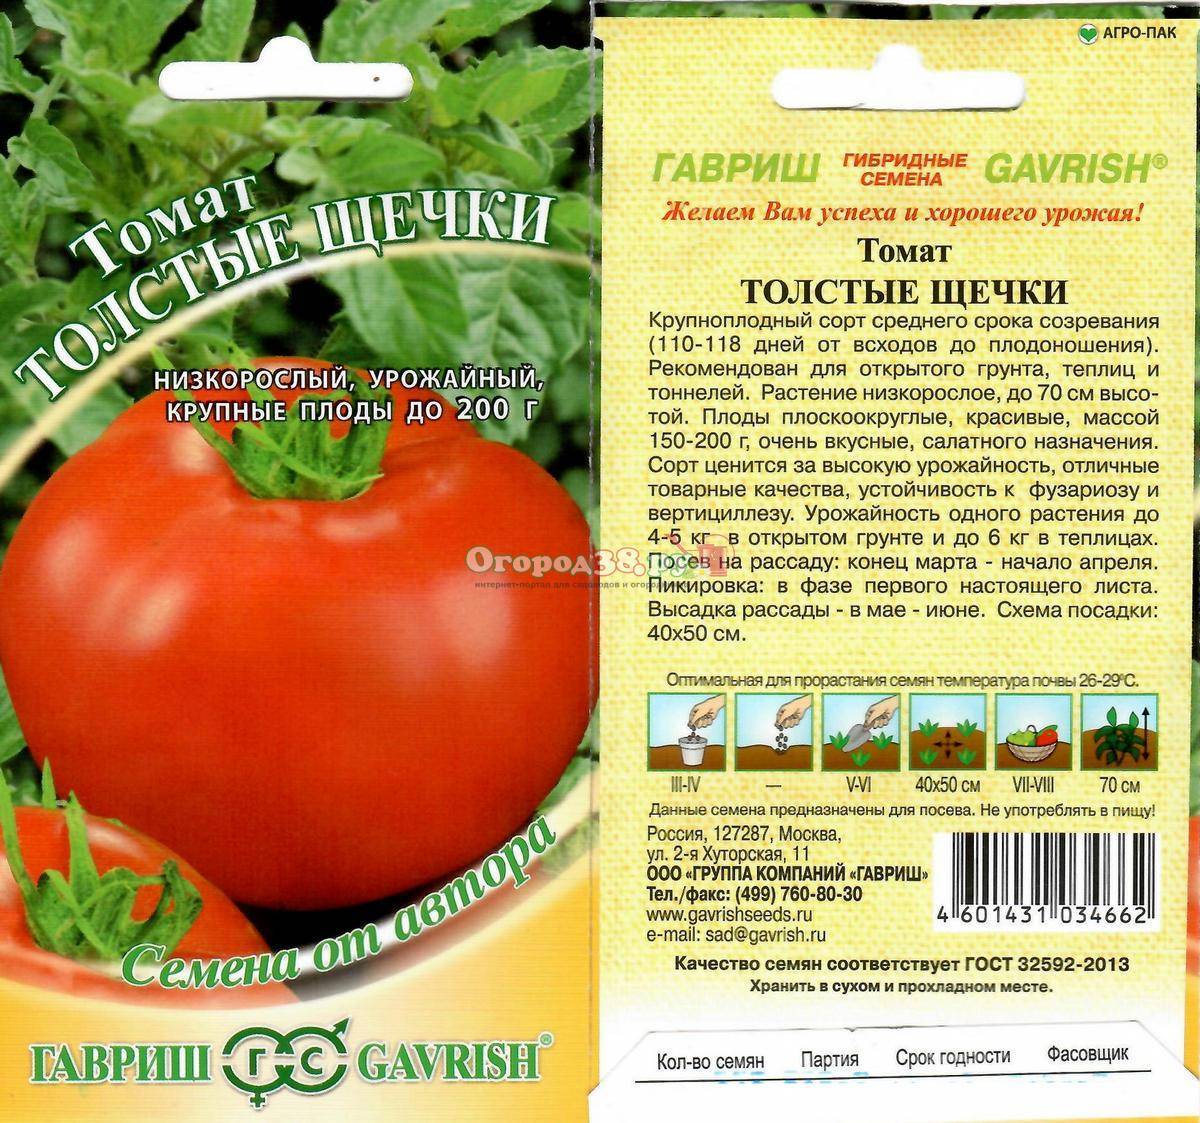 «розовые щечки»: описание сорта томатов, характеристики и отзывы садоводов